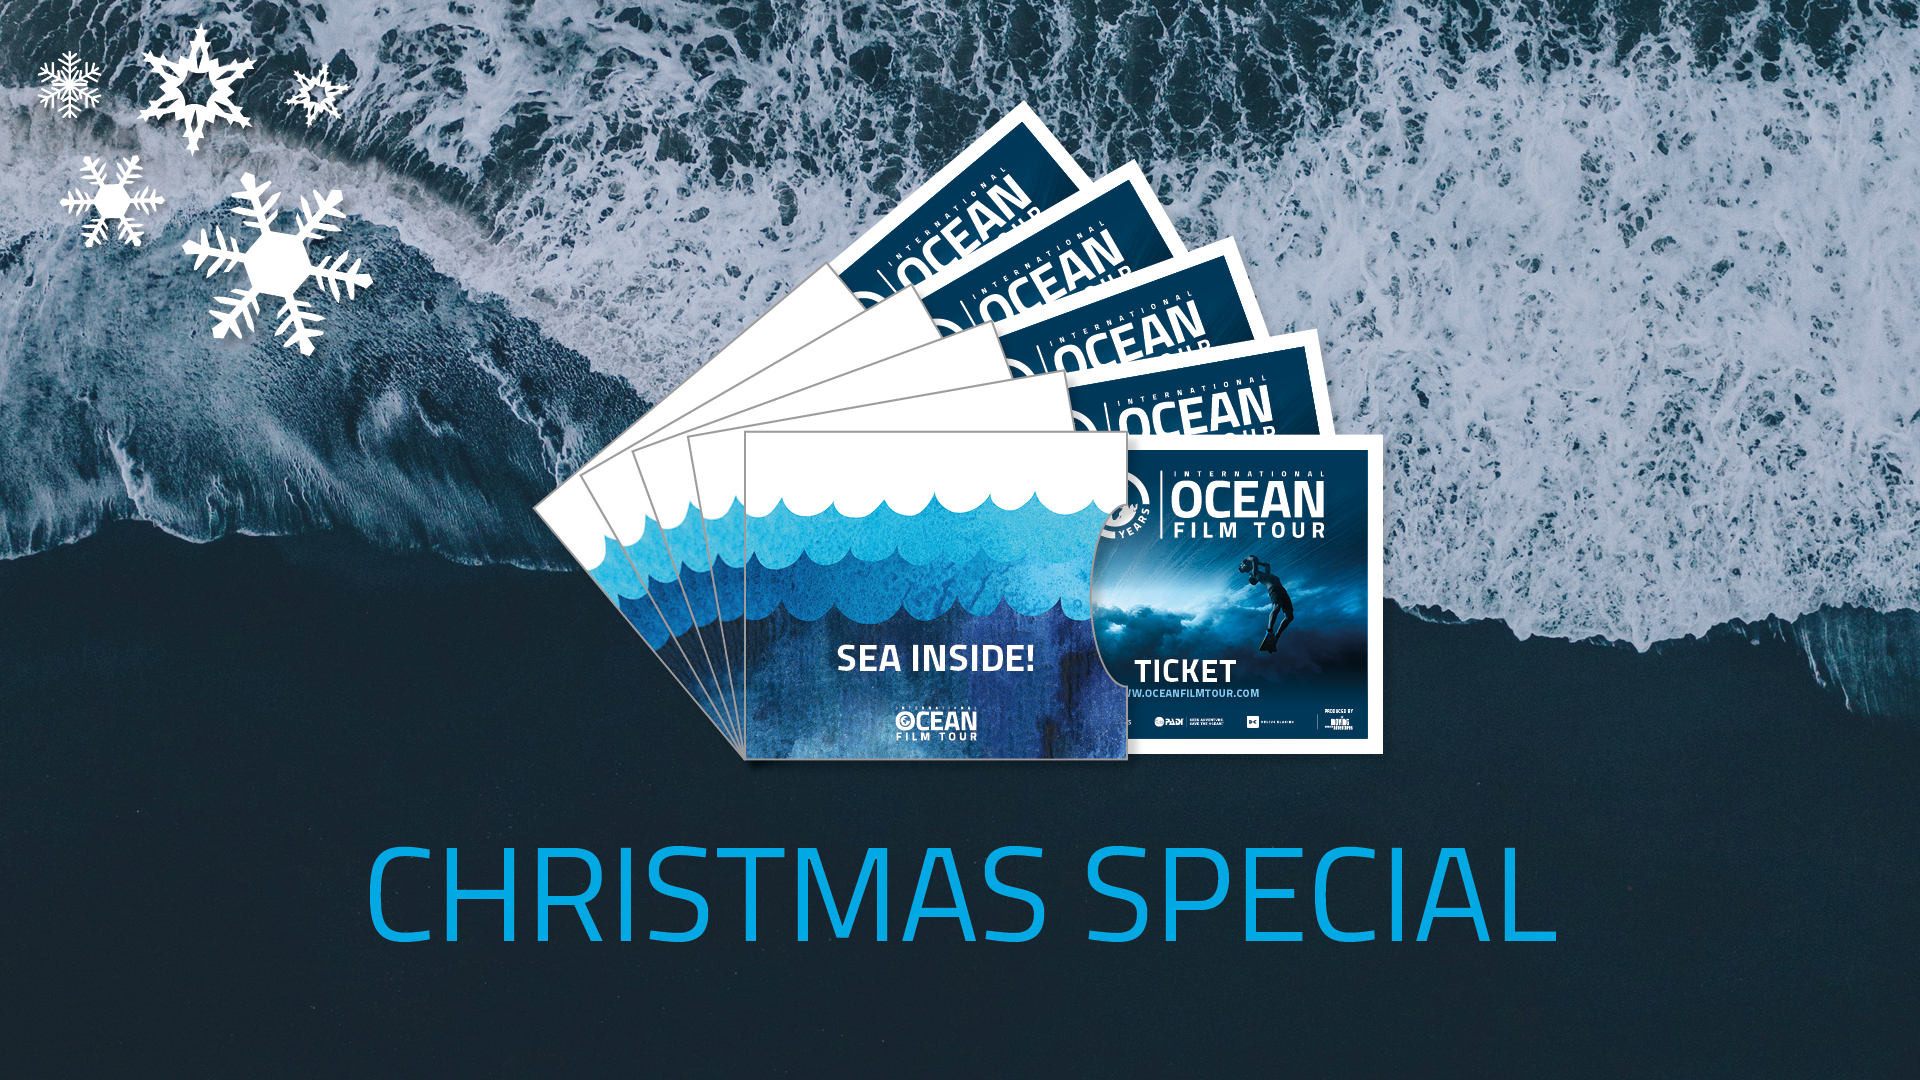 OCEAN FILM TOUR Christmas Special